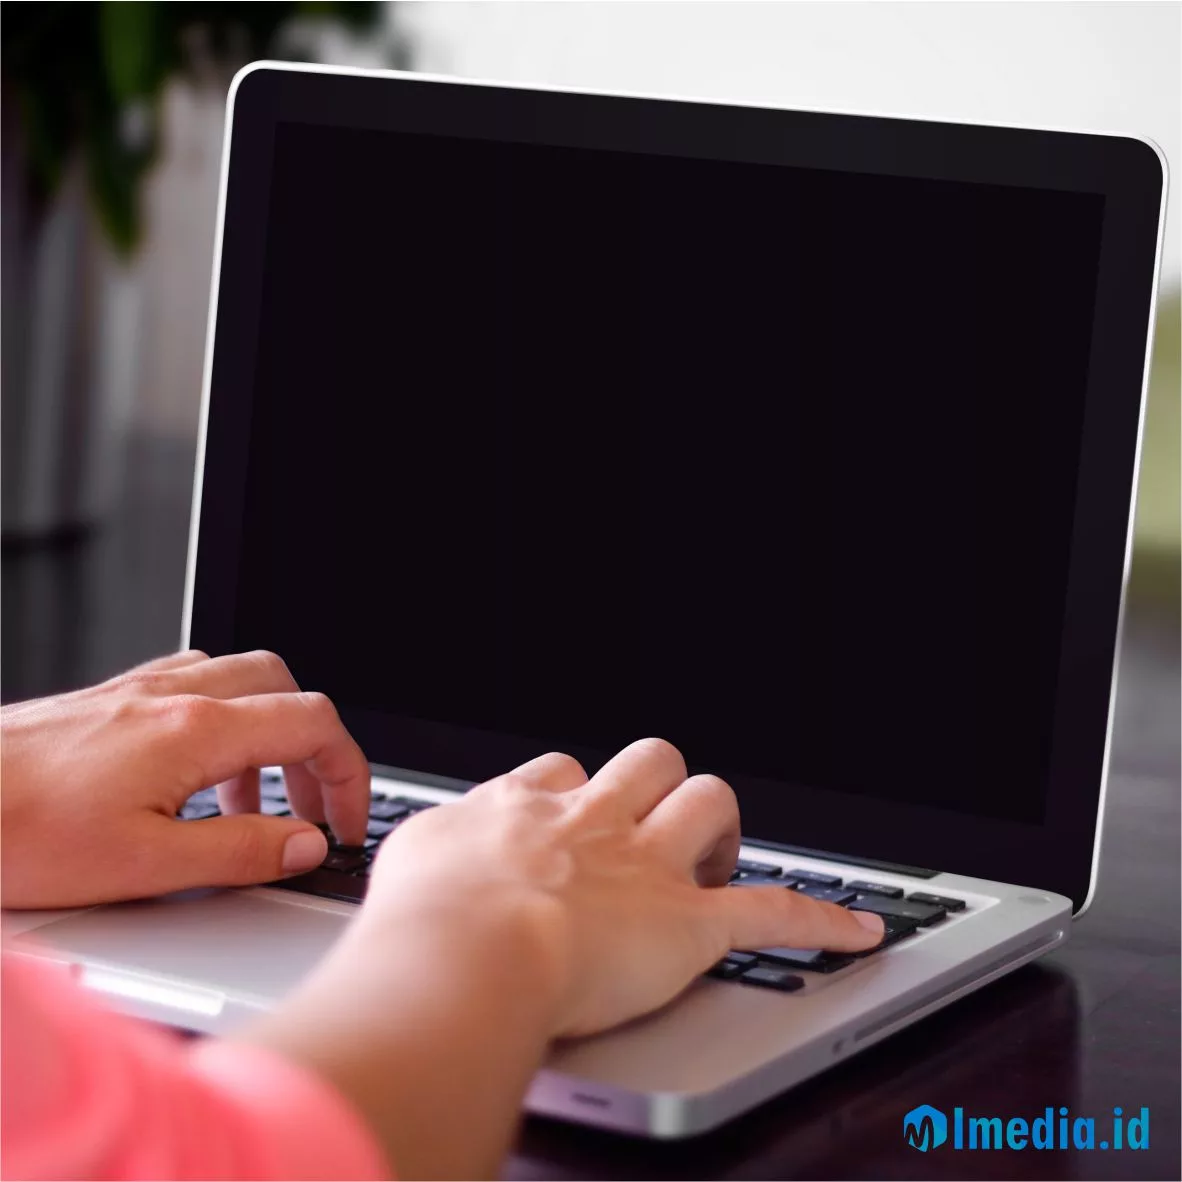 Penyebab dan Cara Mengatasi Laptop Black Screen